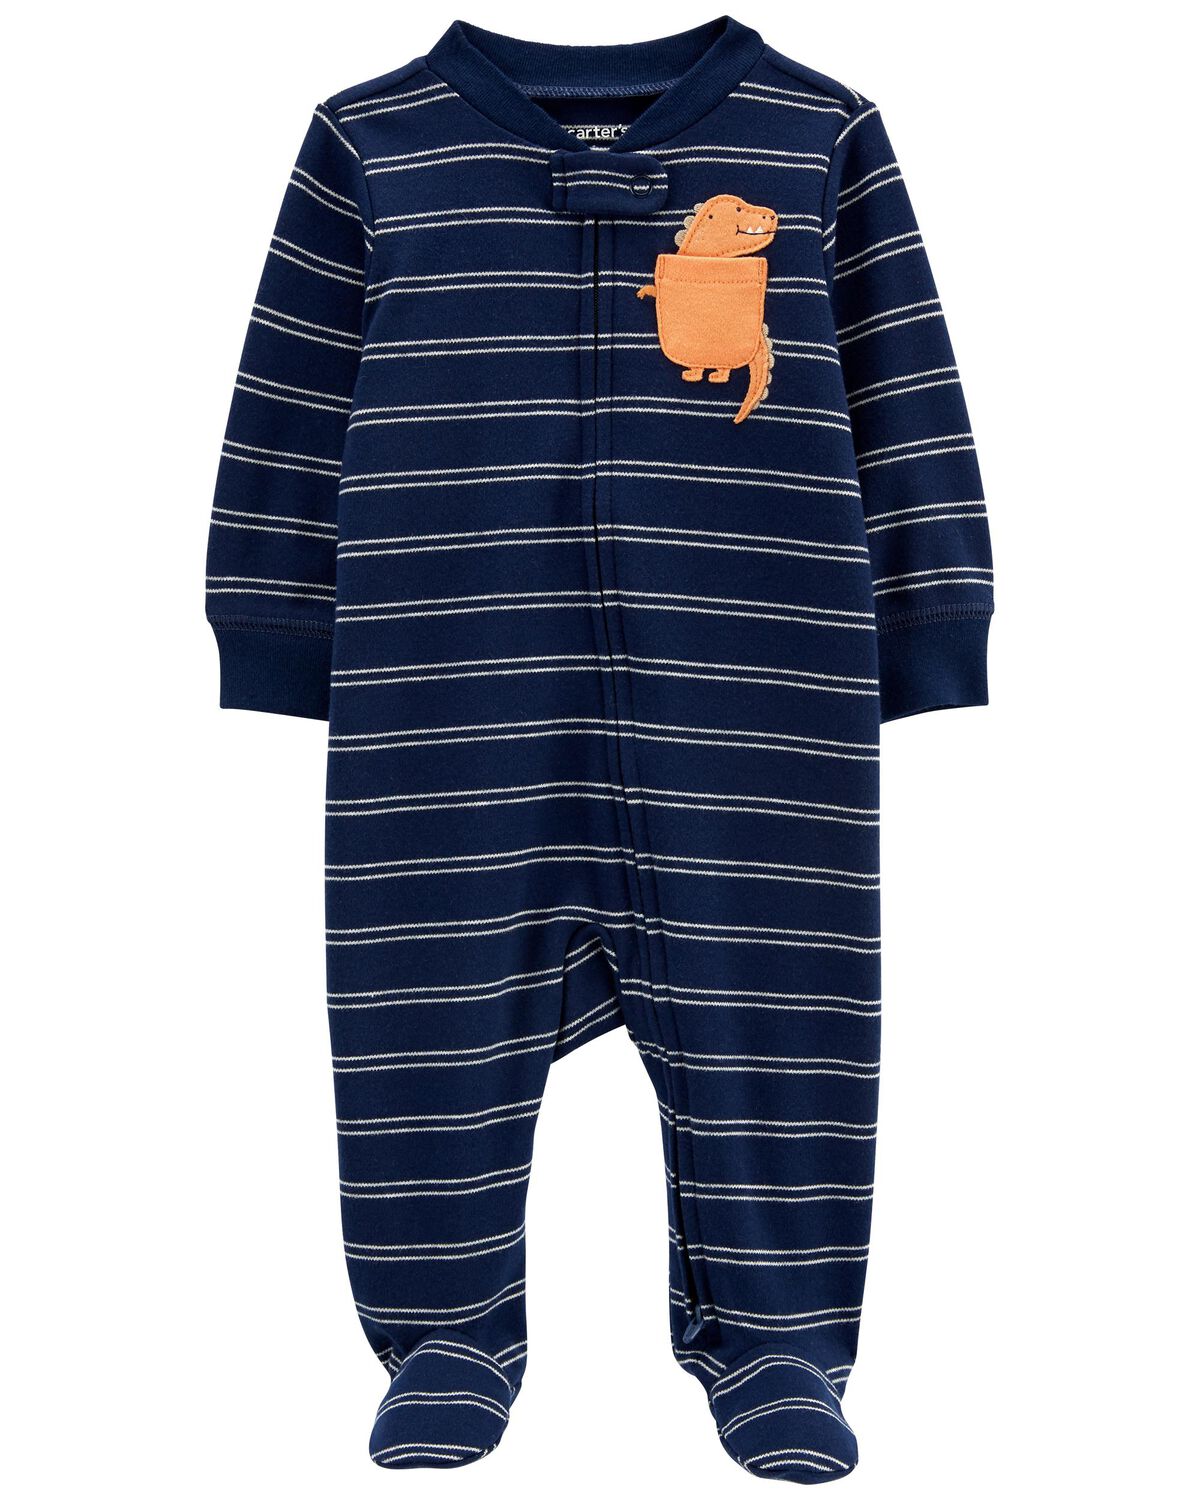 Baby Dinosaur 2-Way Zip Cotton Sleep & Play Pajamas